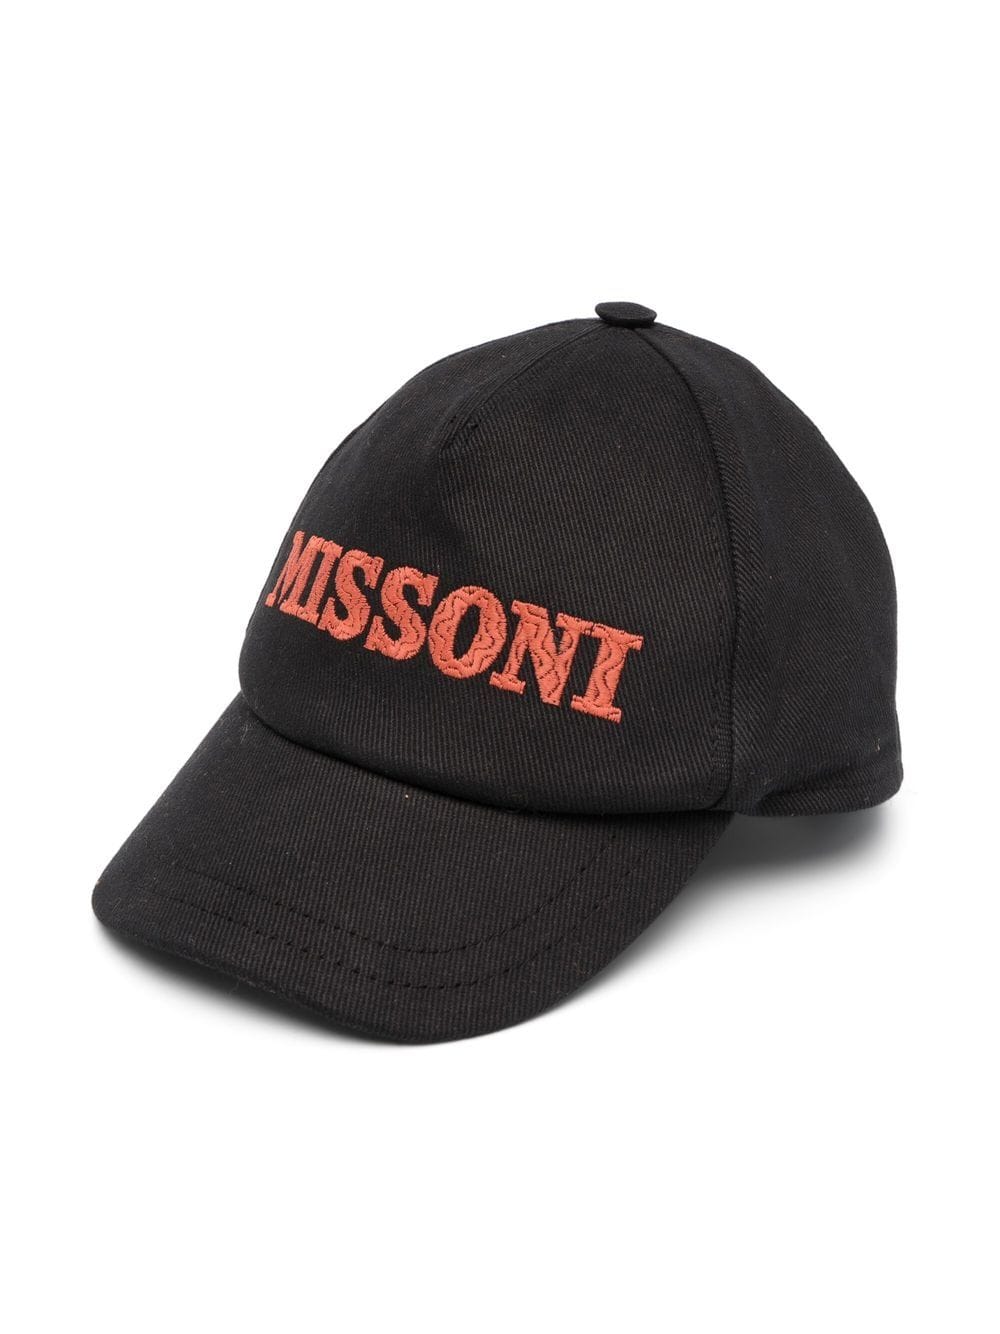 Missoni Kids logo-print baseball cap - Black von Missoni Kids